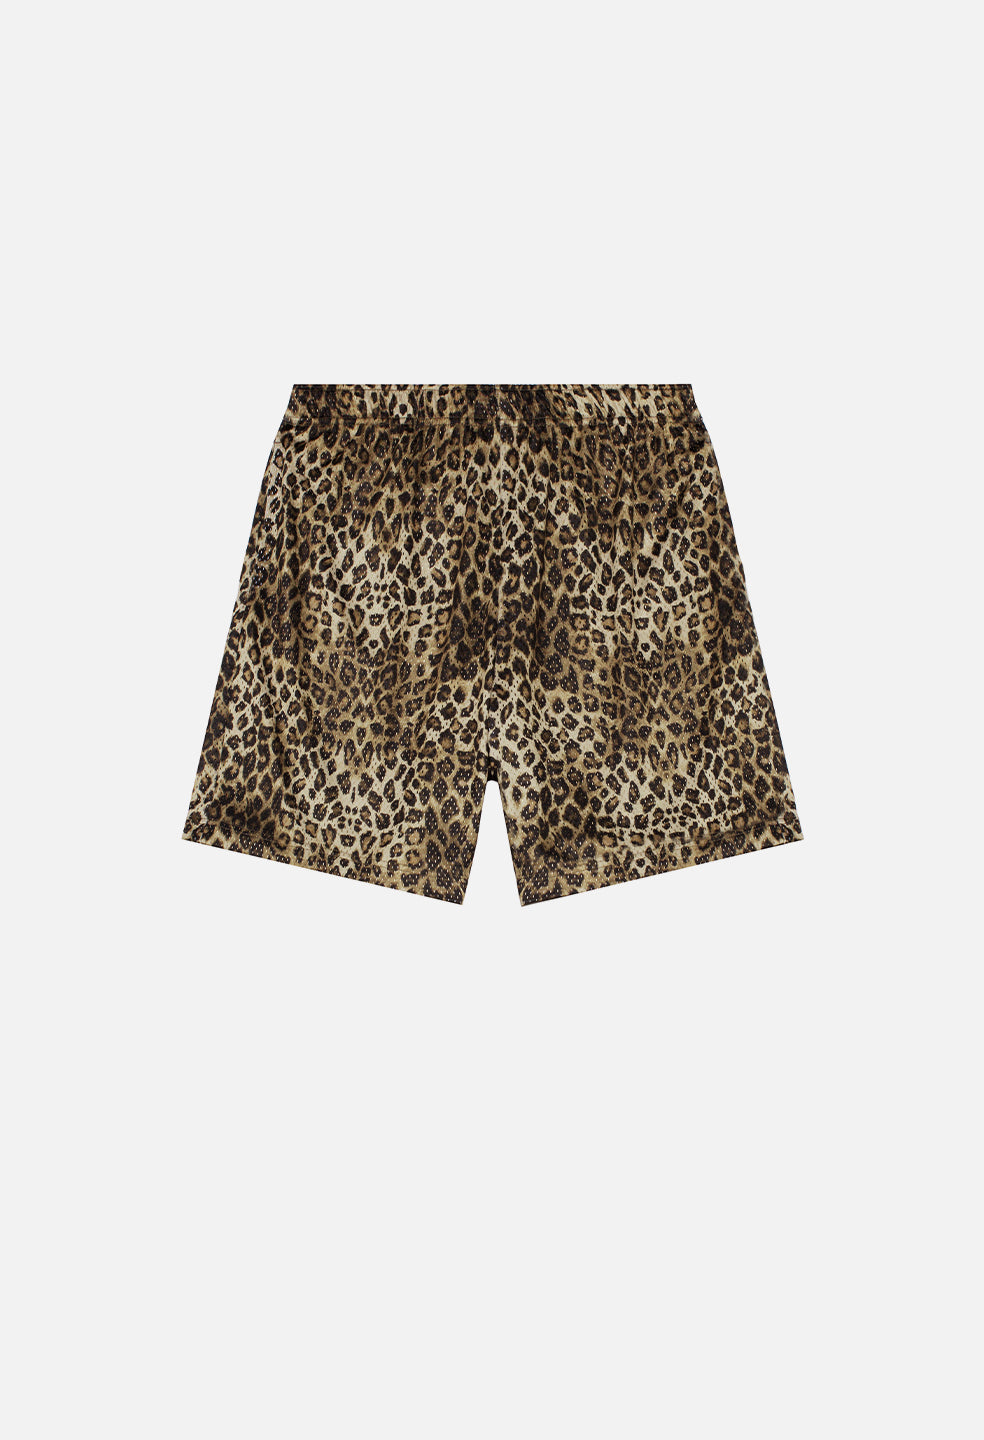 supreme leopard regular jean shorts